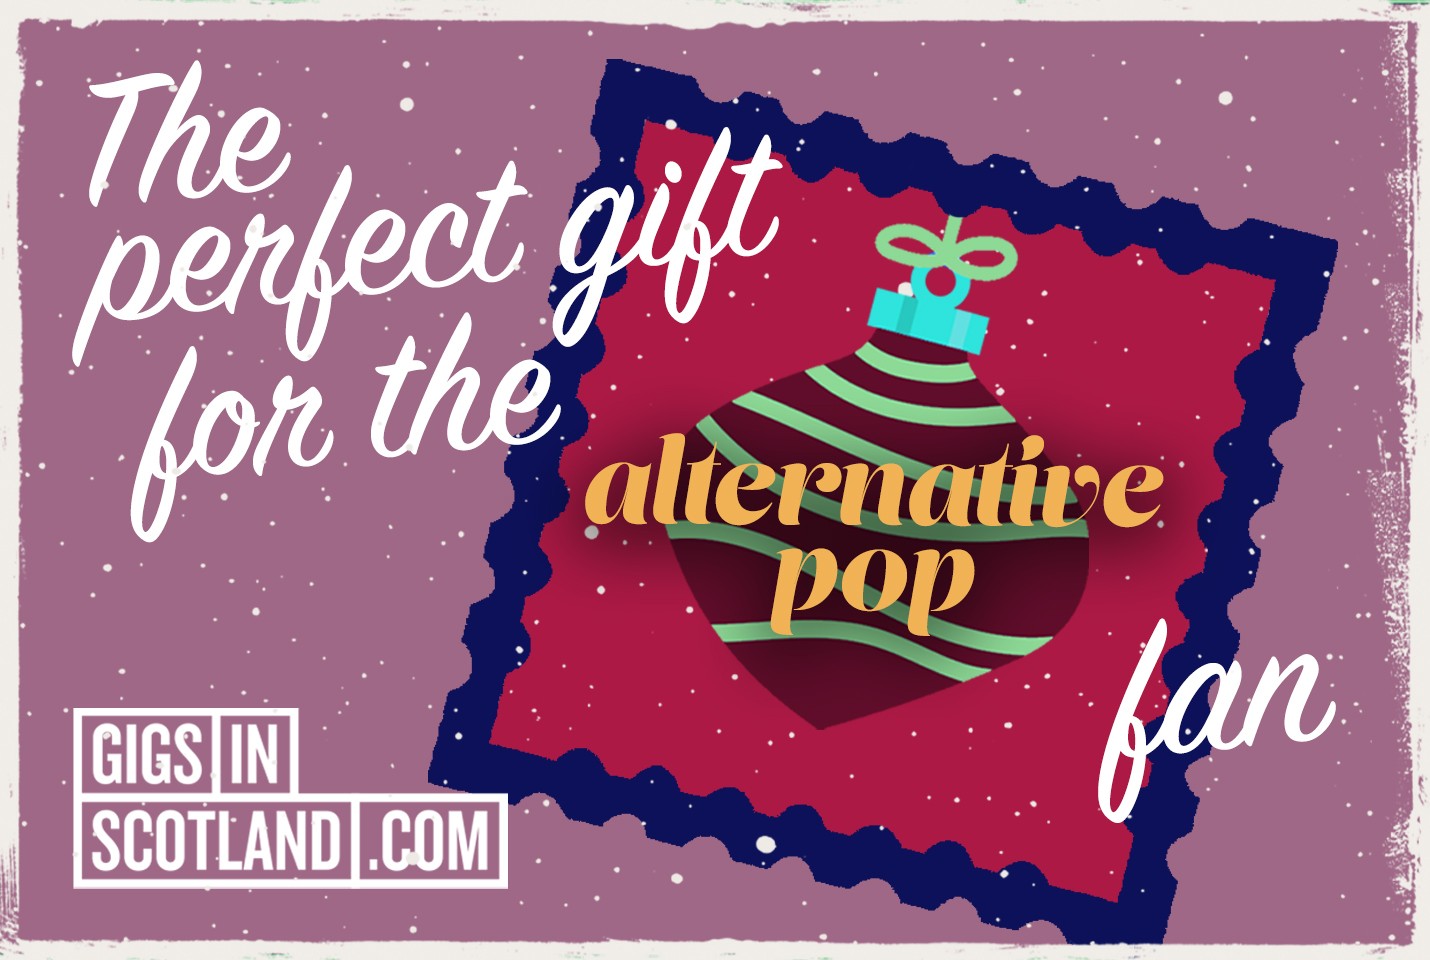 Alternative Pop Fan - Christmas Gift Guide 2021